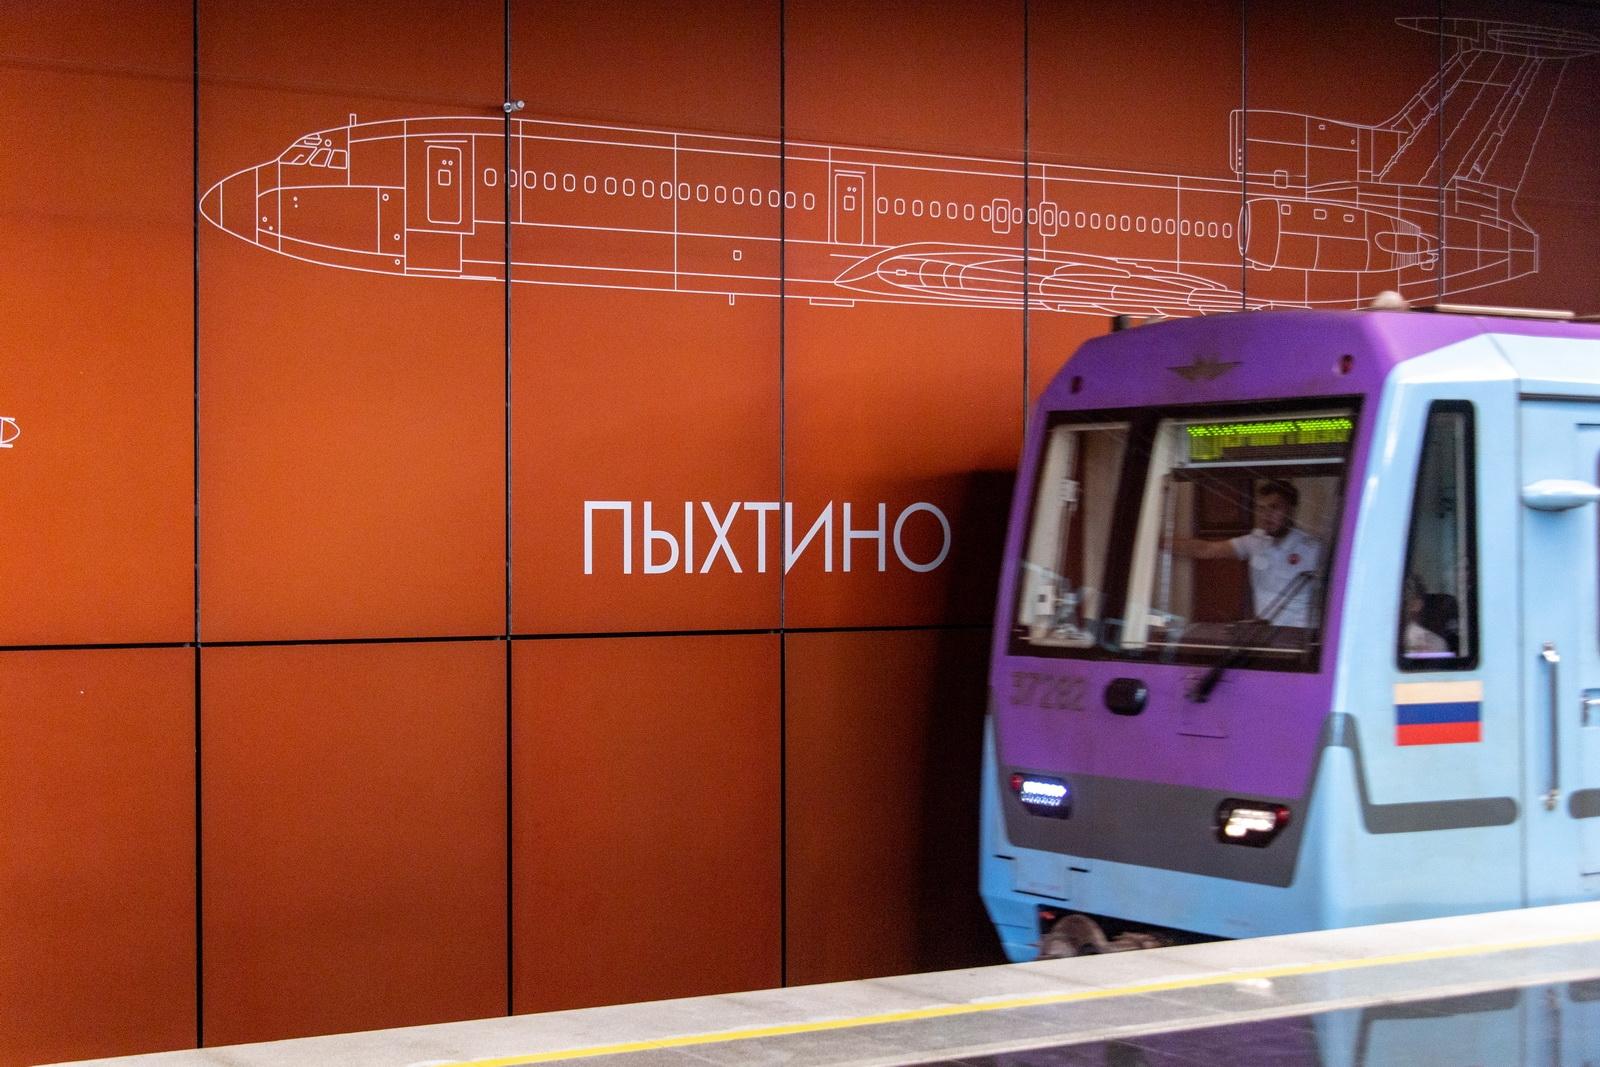 «Пыхтино» – вторая полуподземная станция в столичном метро